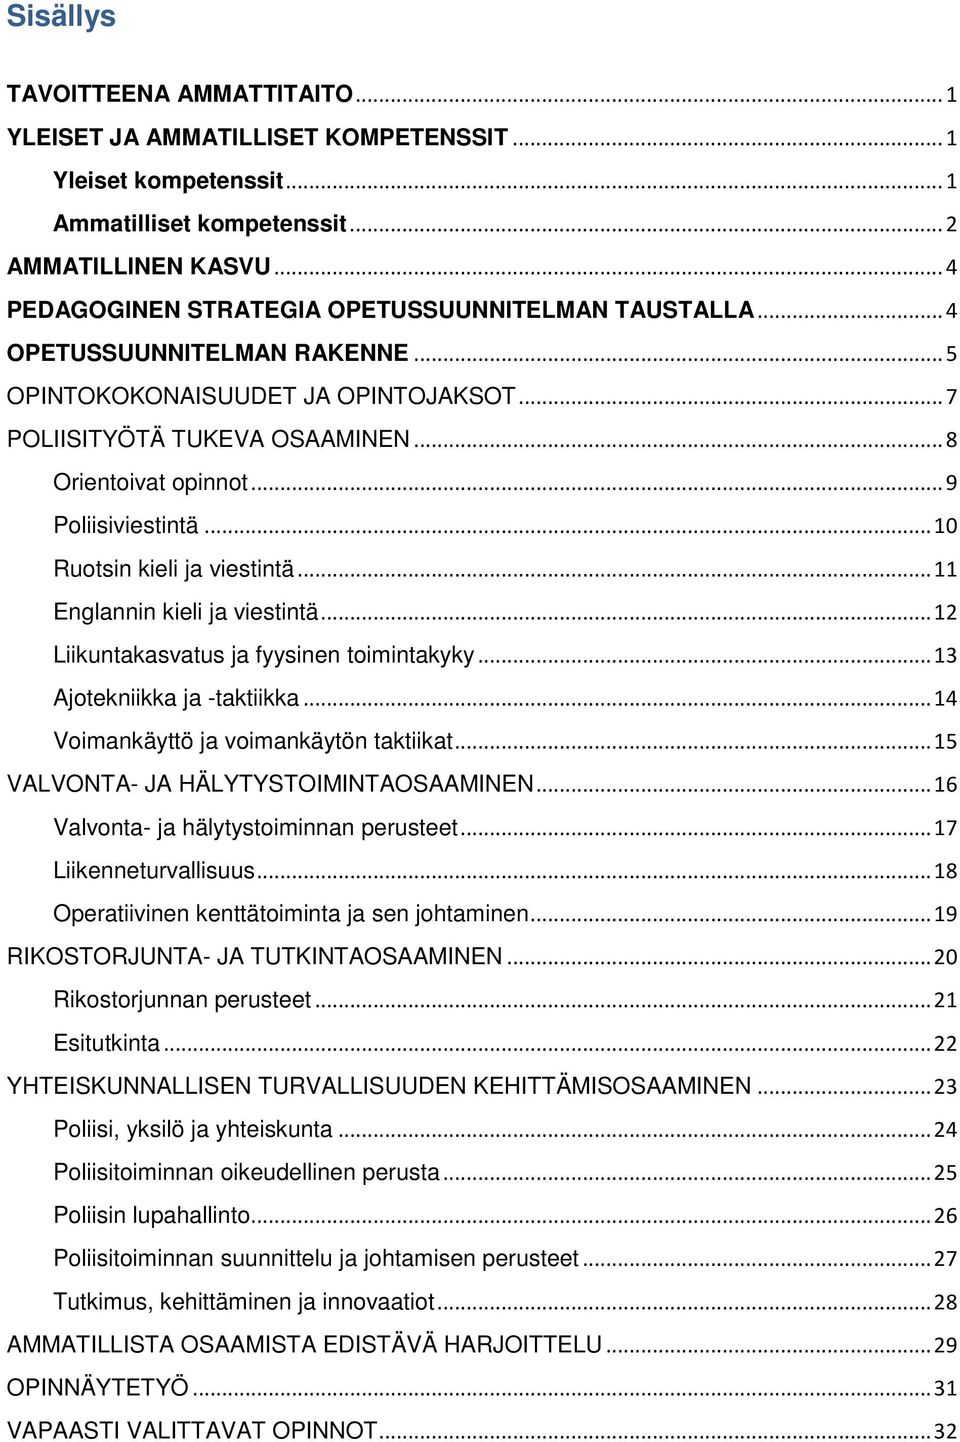 .. 9 Poliisiviestintä... 10 Ruotsin kieli ja viestintä... 11 Englannin kieli ja viestintä... 12 Liikuntakasvatus ja fyysinen toimintakyky... 13 Ajotekniikka ja -taktiikka.